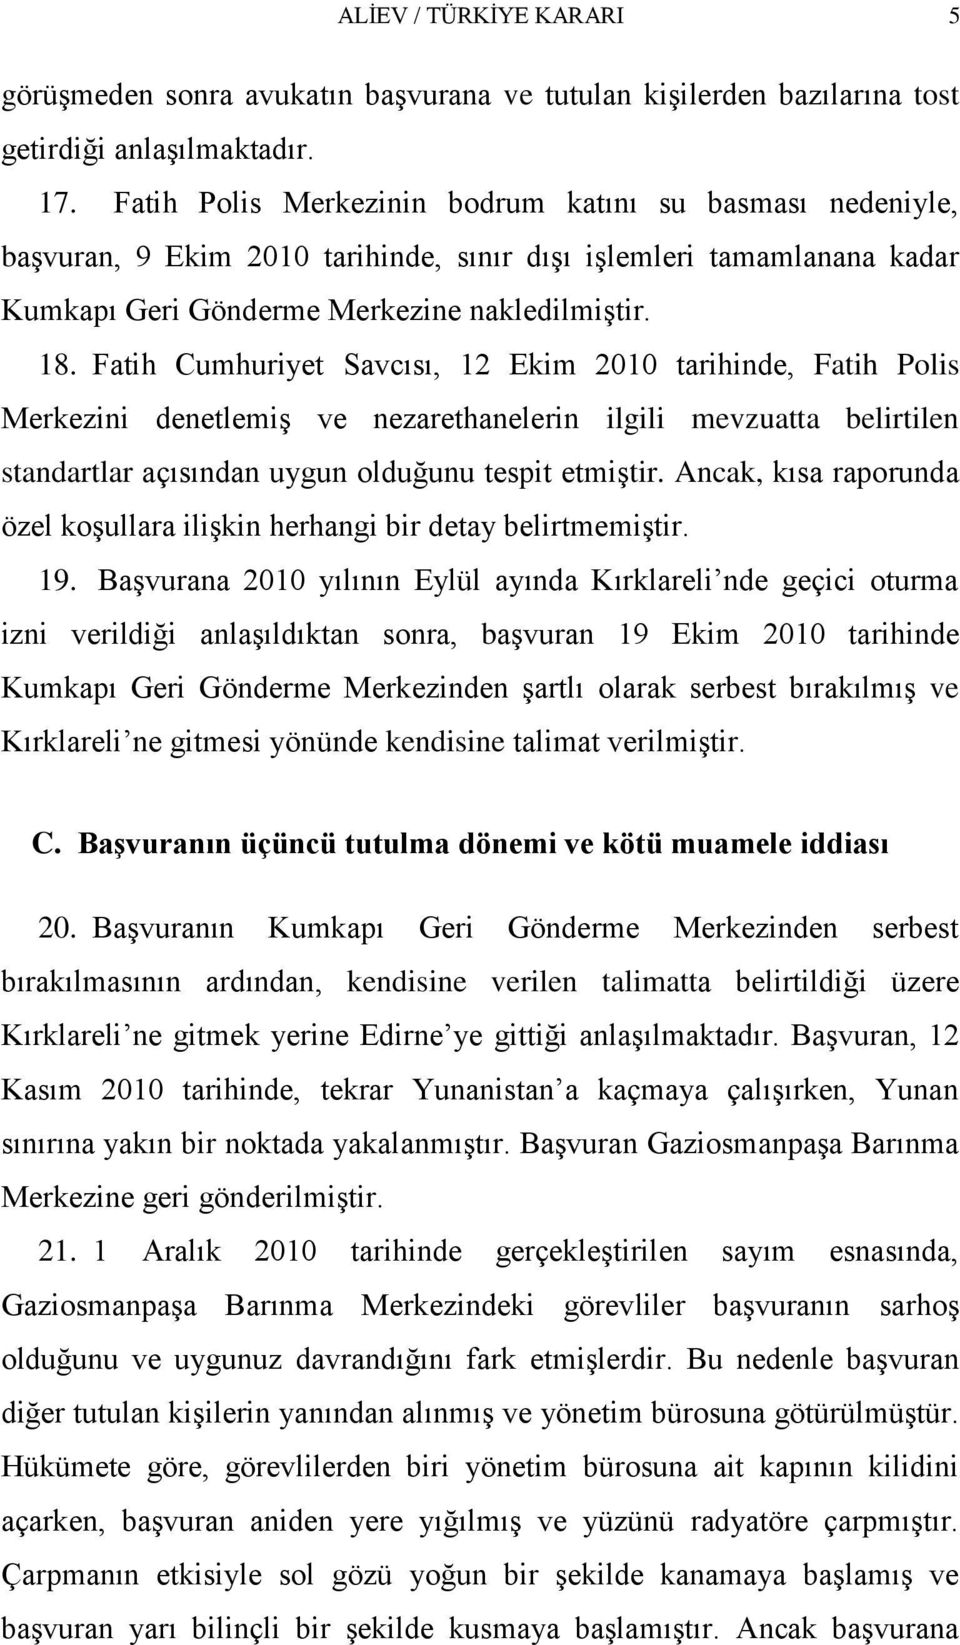 Fatih Cumhuriyet Savcısı, 12 Ekim 2010 tarihinde, Fatih Polis Merkezini denetlemiģ ve nezarethanelerin ilgili mevzuatta belirtilen standartlar açısından uygun olduğunu tespit etmiģtir.